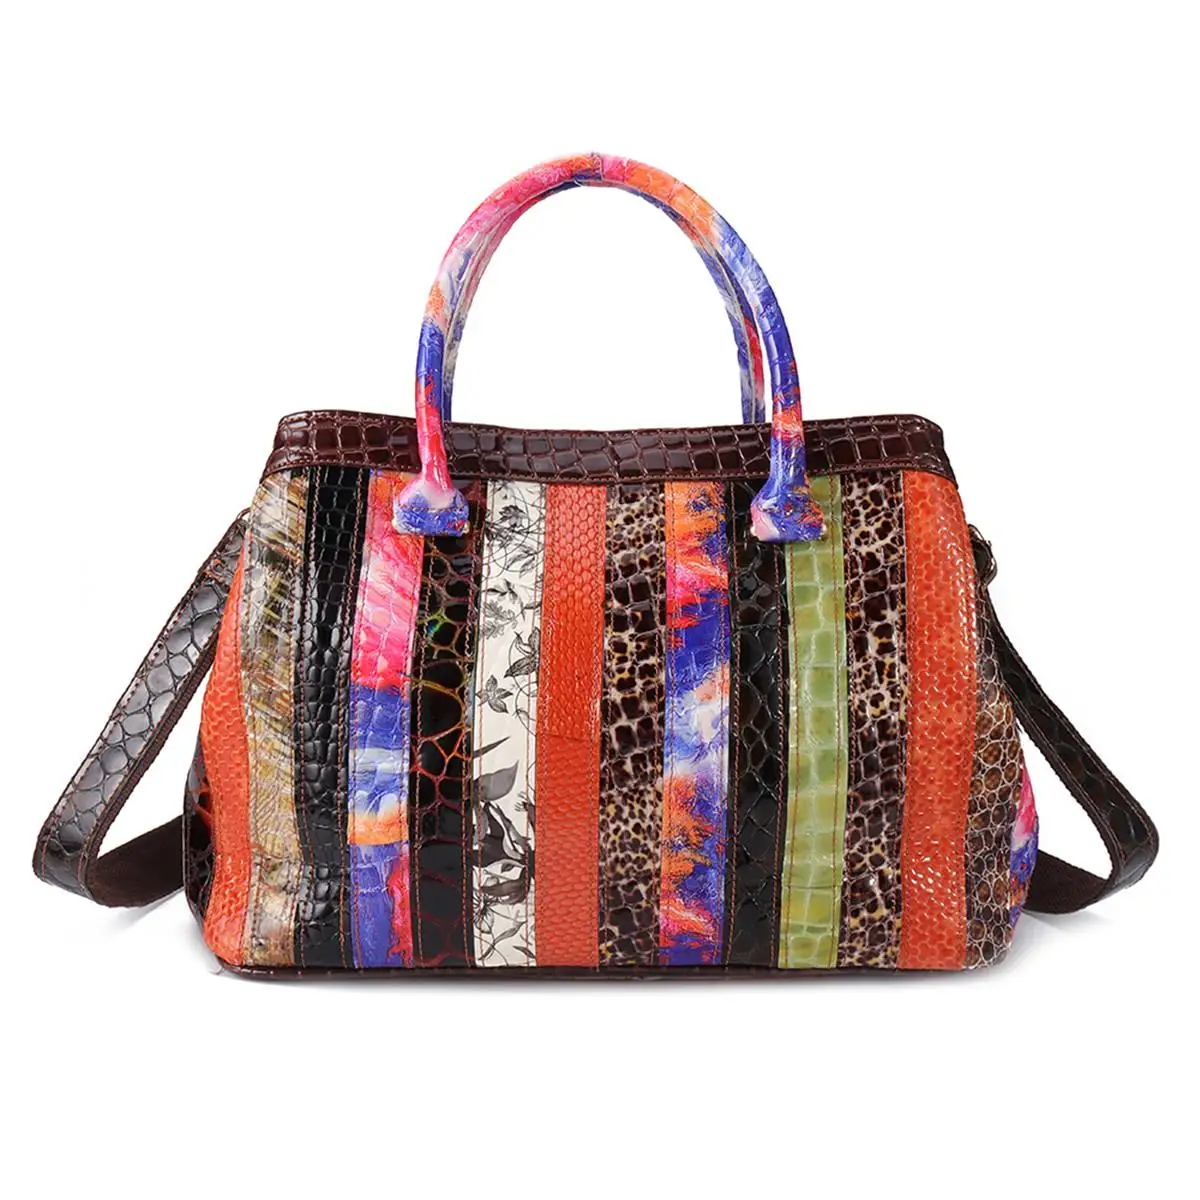 AEQUEEN Лоскутные сумки из натуральной кожи, женские роскошные сумки на плечо, женские сумки через плечо с цветочным принтом, сумки через плечо, разные цвета